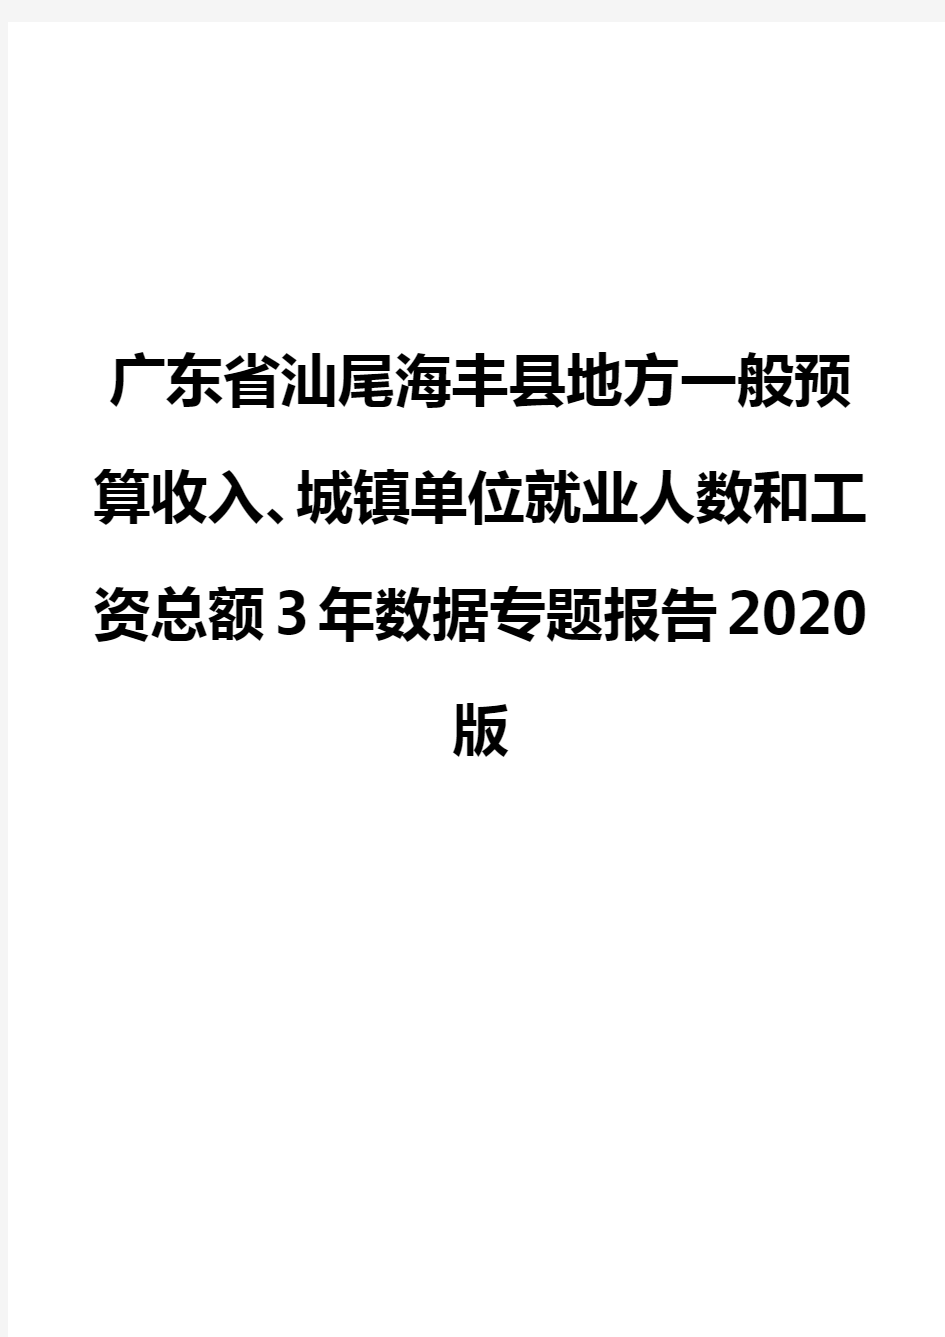 广东省汕尾海丰县地方一般预算收入、城镇单位就业人数和工资总额3年数据专题报告2020版